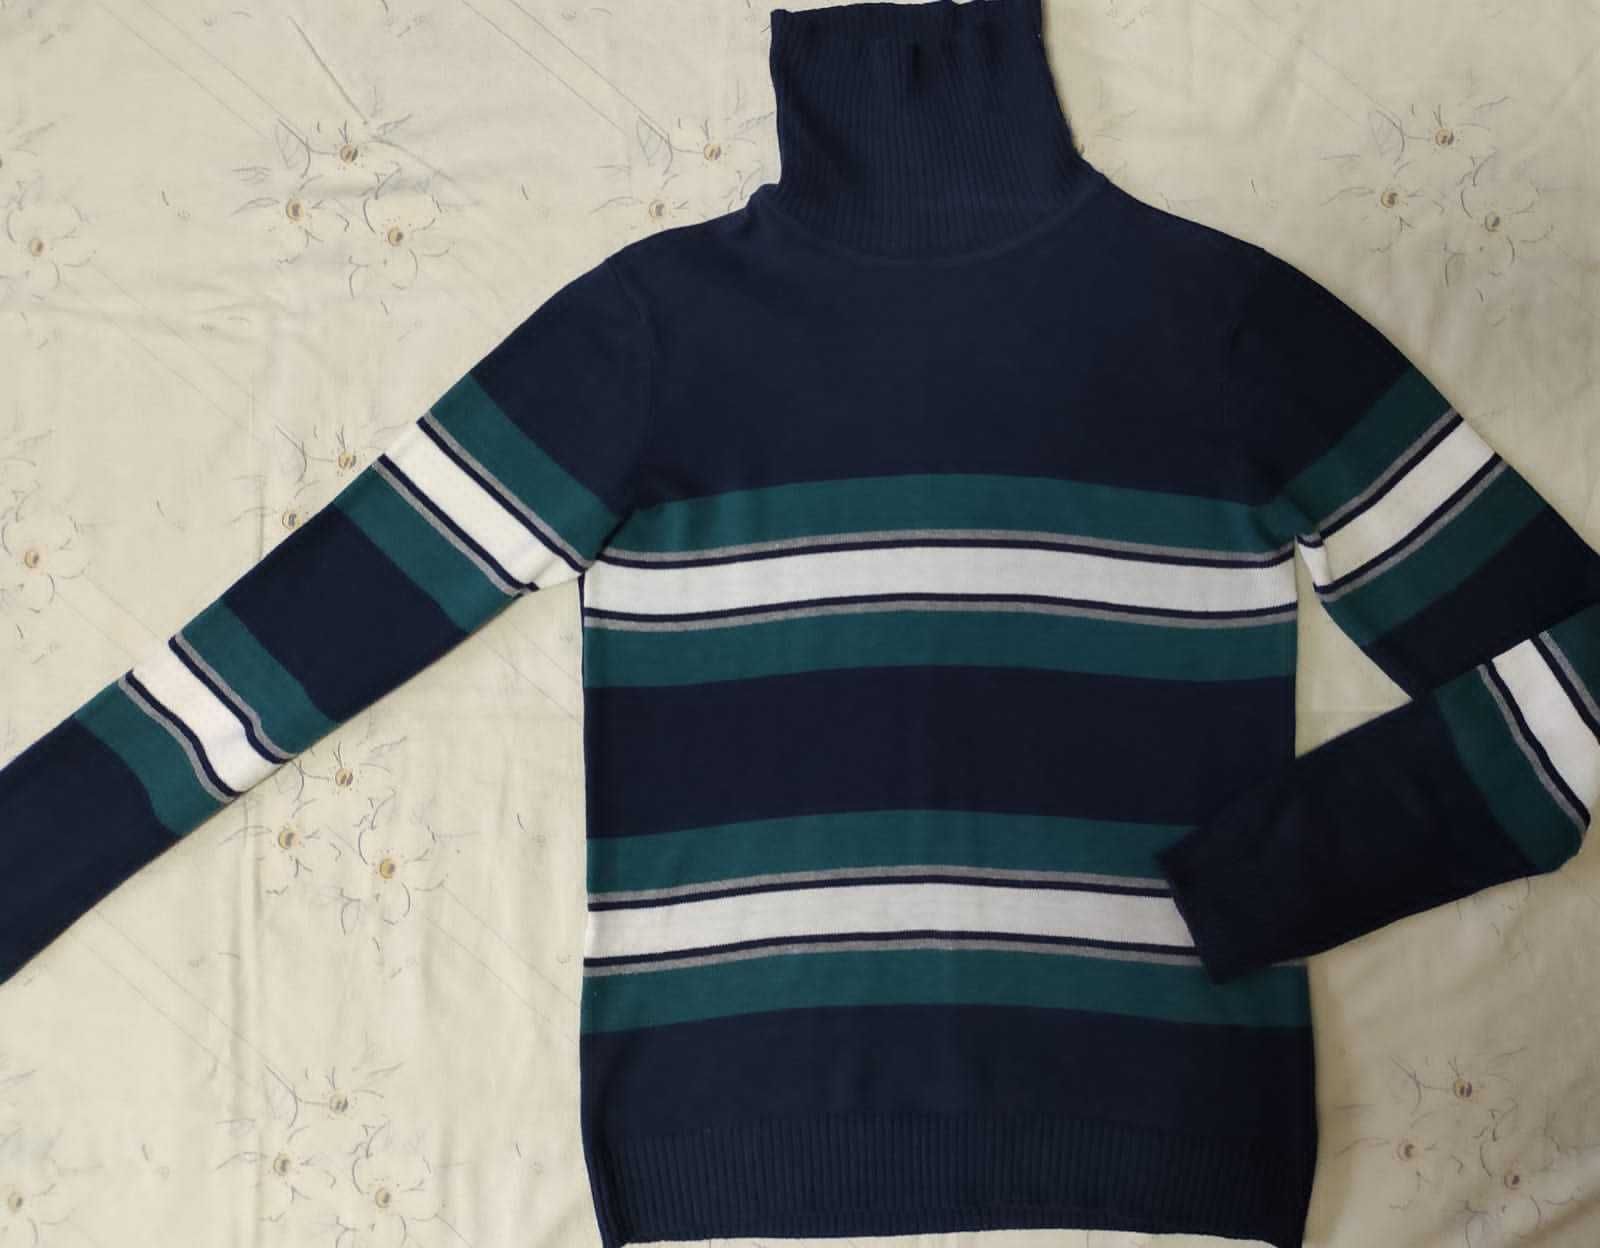 Продам свитер Gloria Jean's на мальчика 12-14 лет, рост 164 см